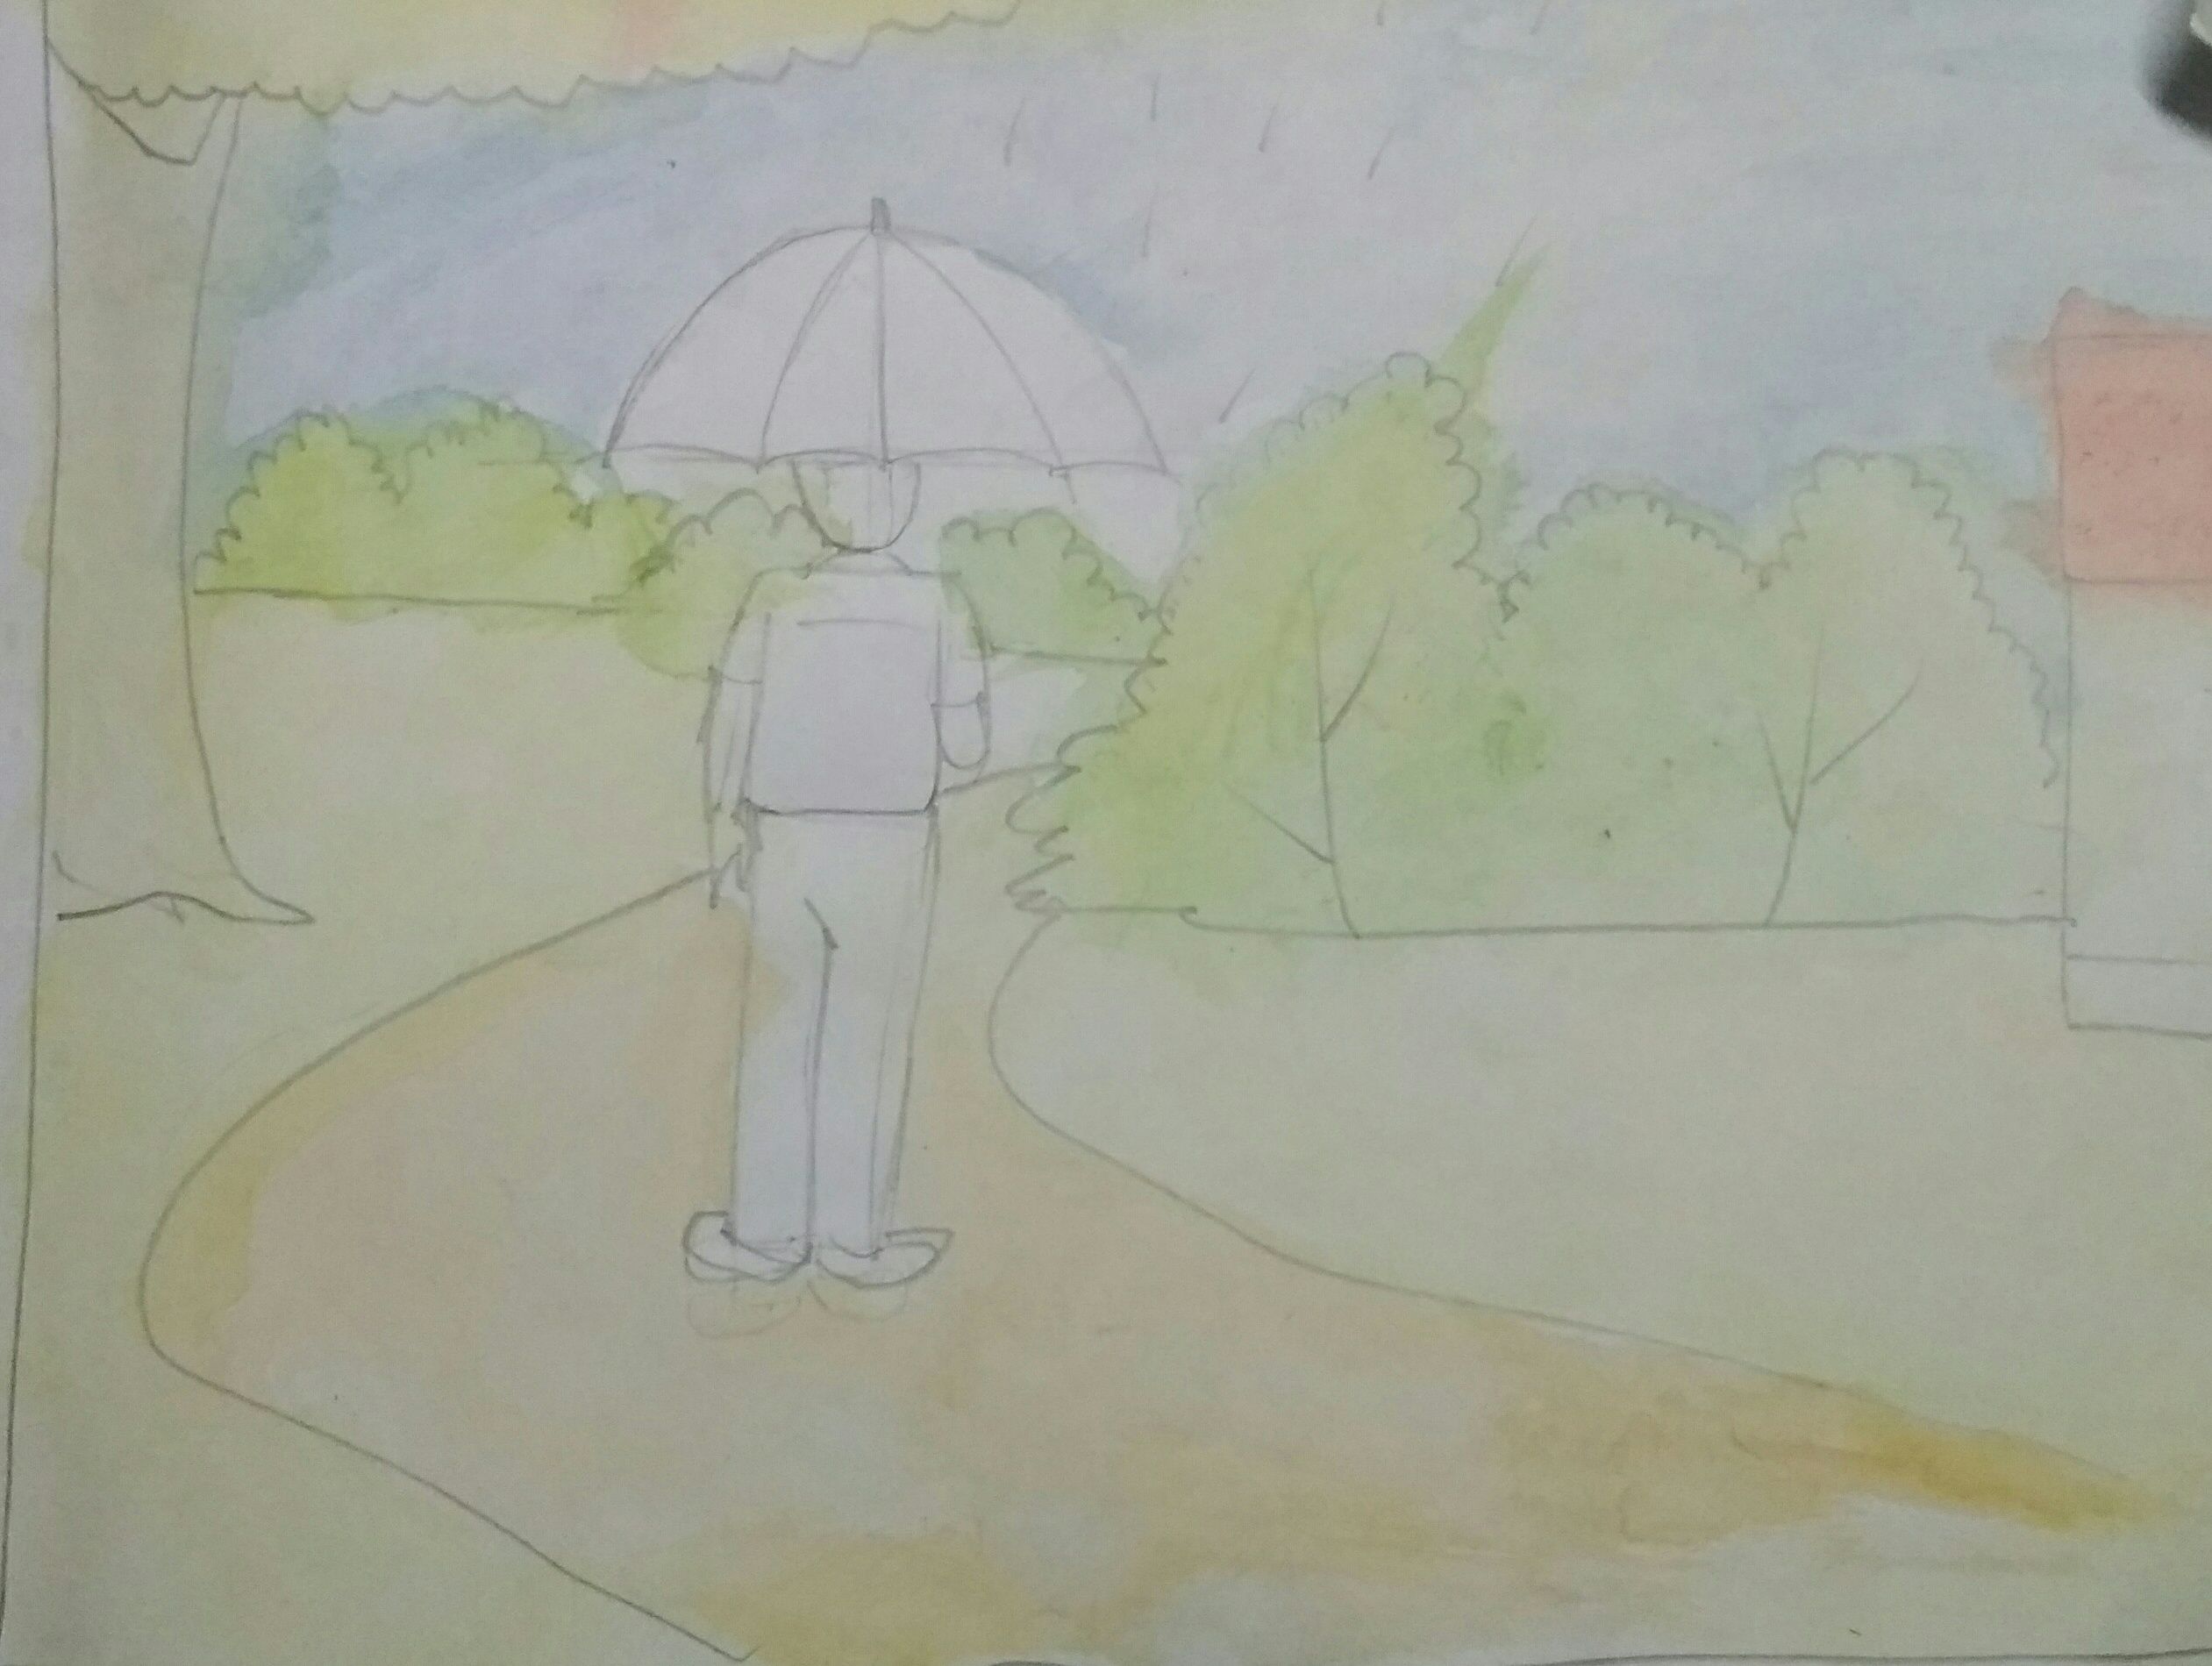 Five Best Drawings of Rain by Children of Taiyyebiyah School